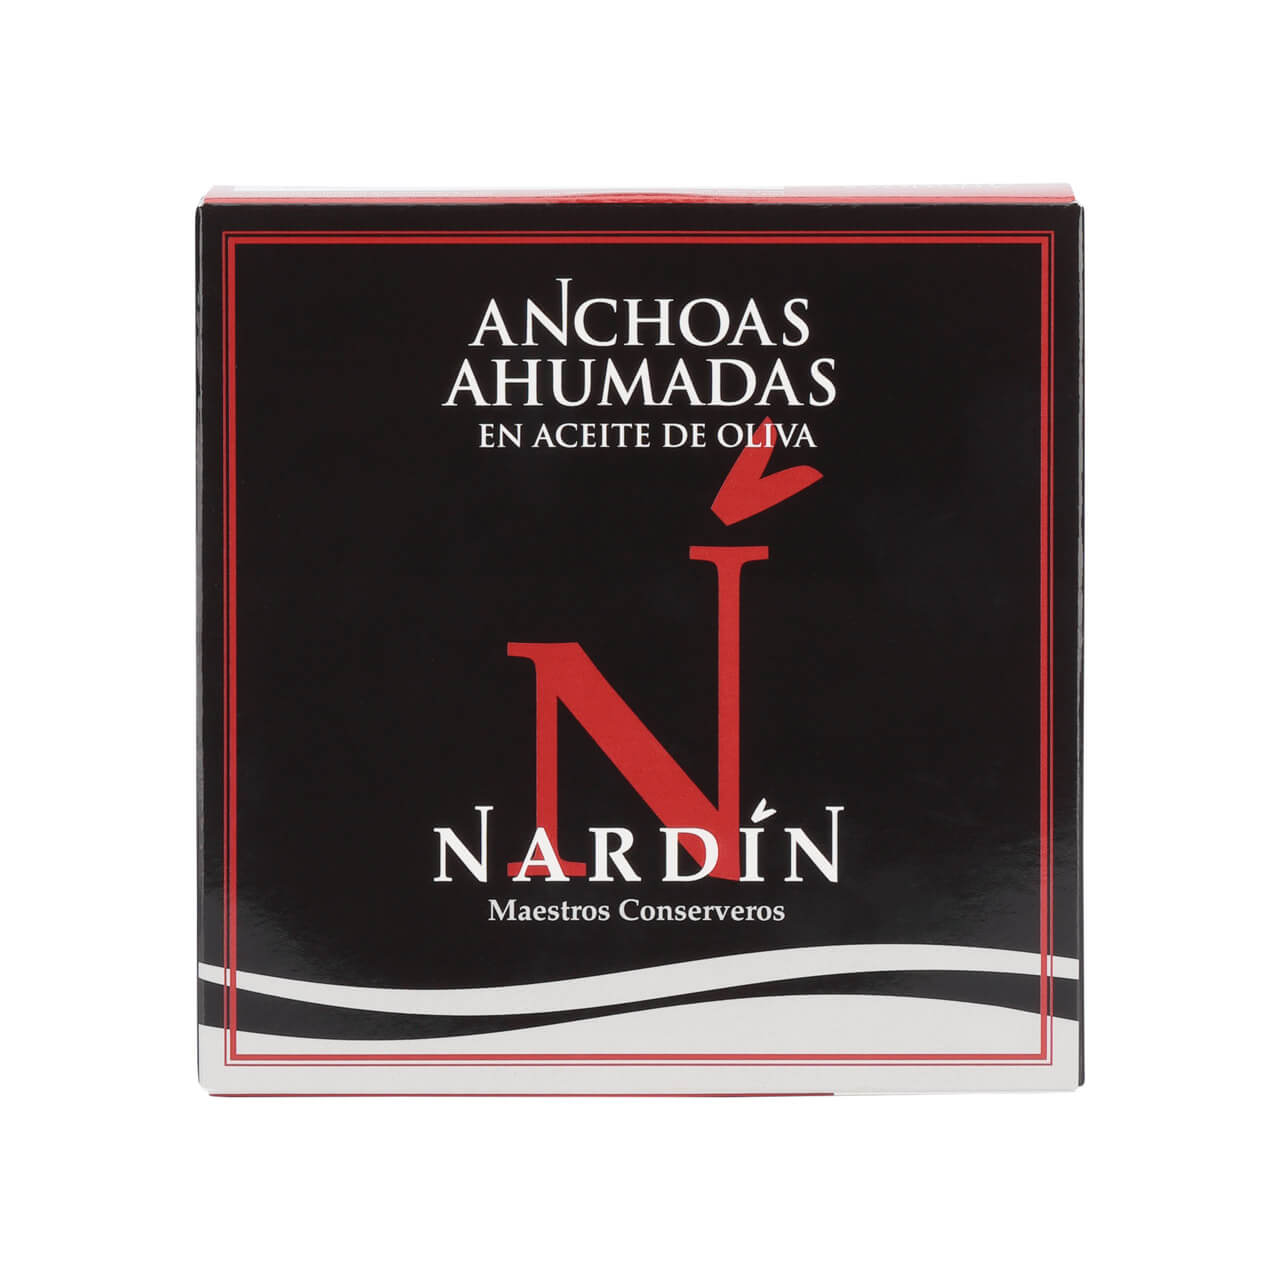 nardin smoked anchovies brindisa spanish foods